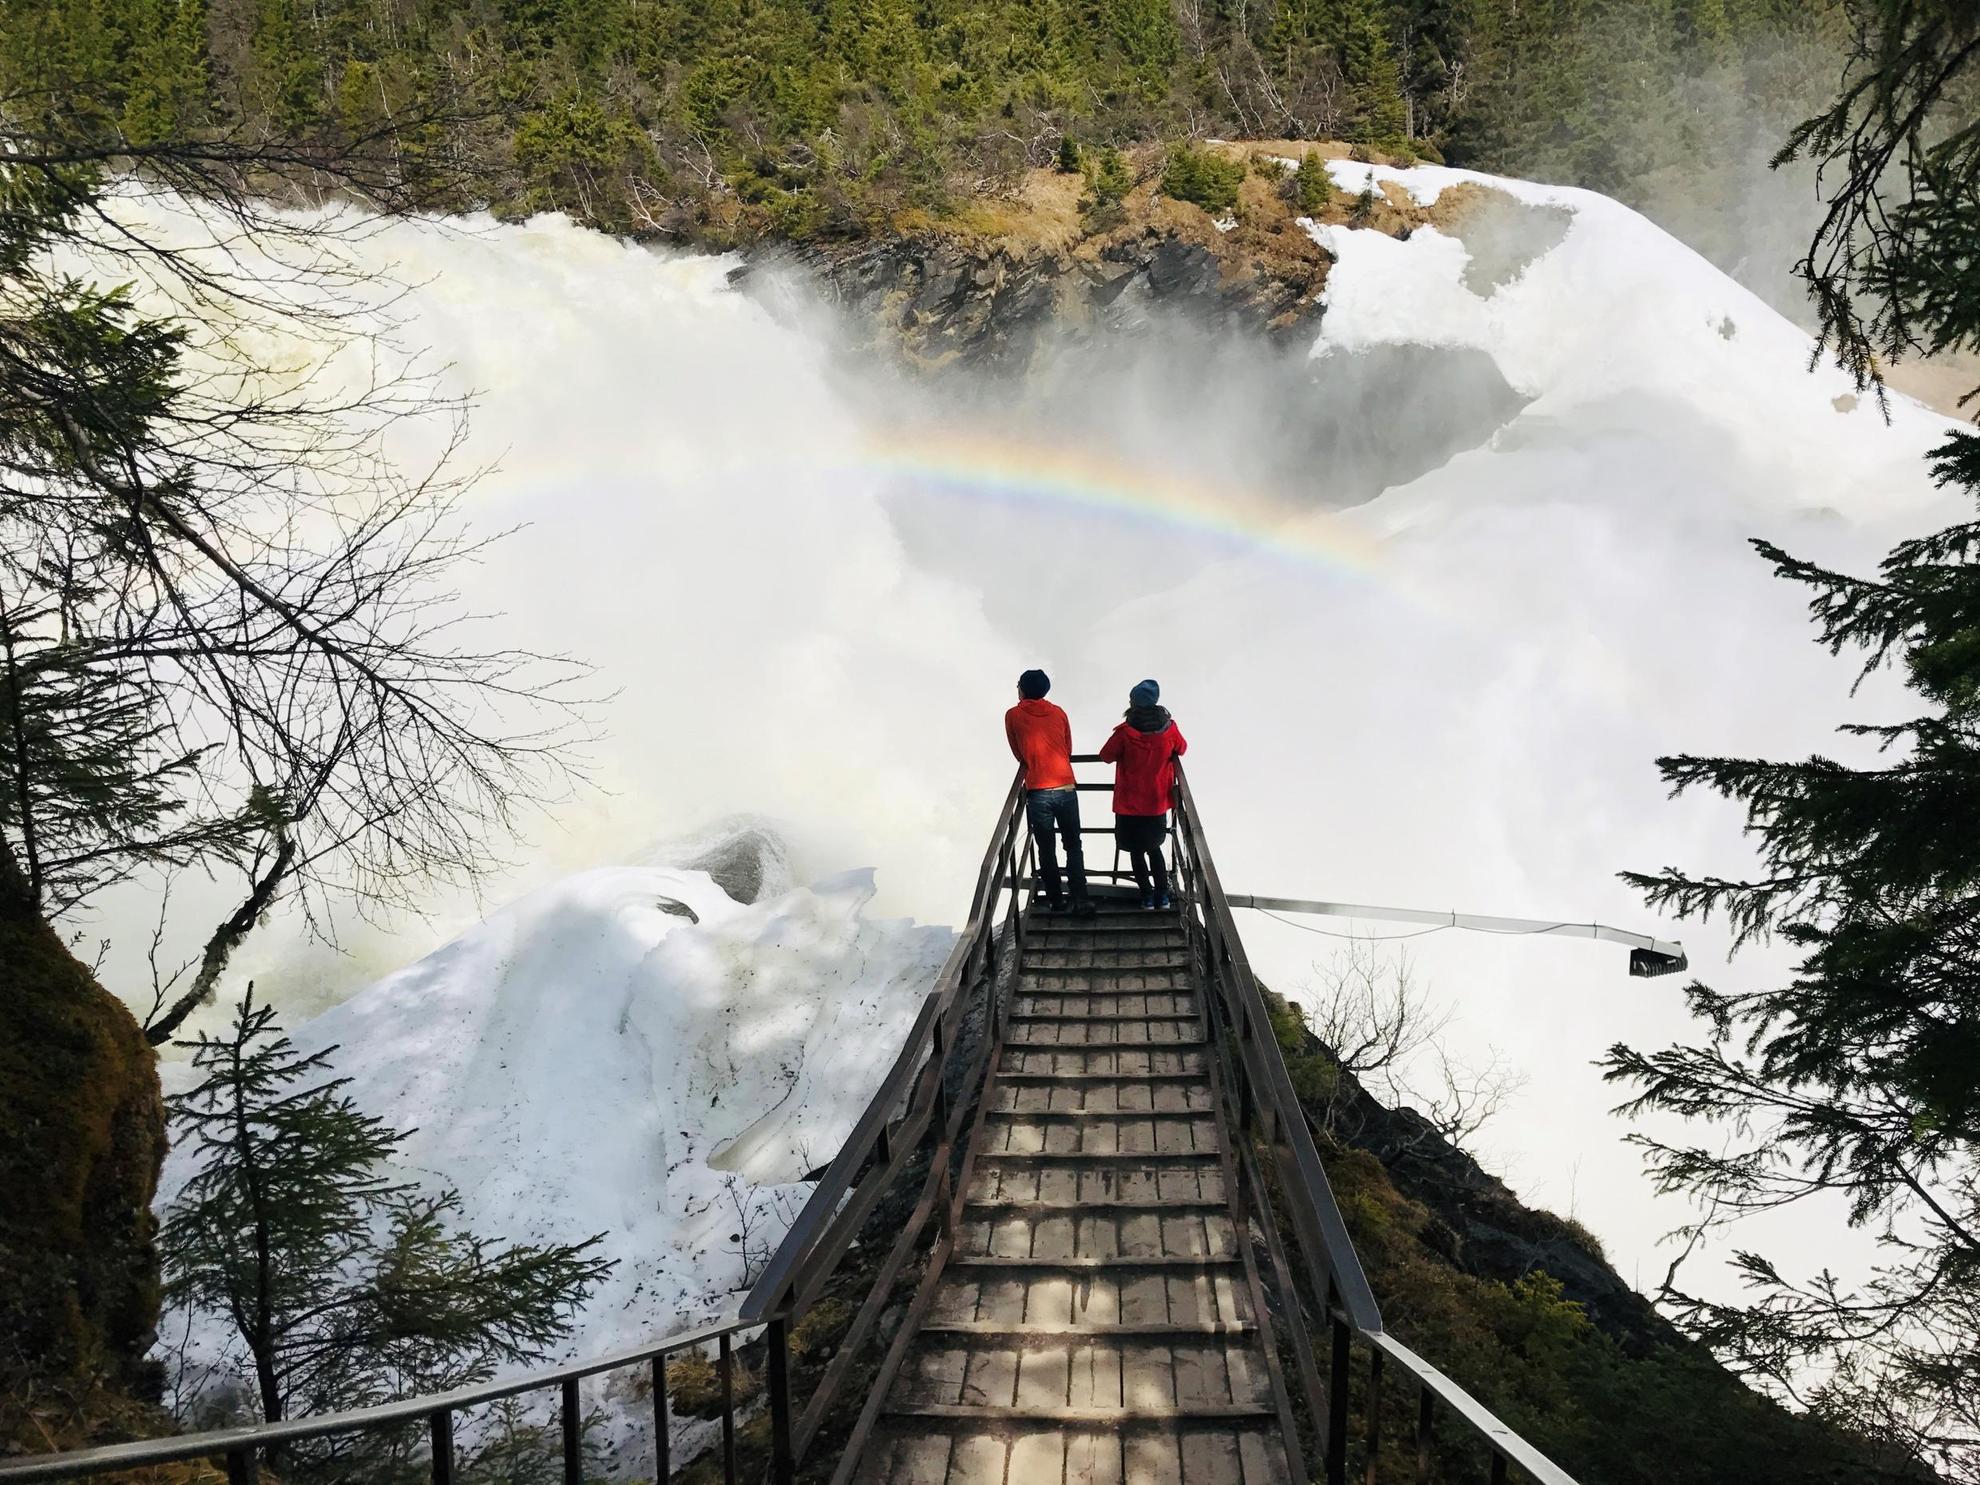 Zwei Menschen stehen auf einer hölzernen Plattform vor einem brausenden Wasserfall. Zwischen der Gischt ist ein Regenbogen zu erkennen.